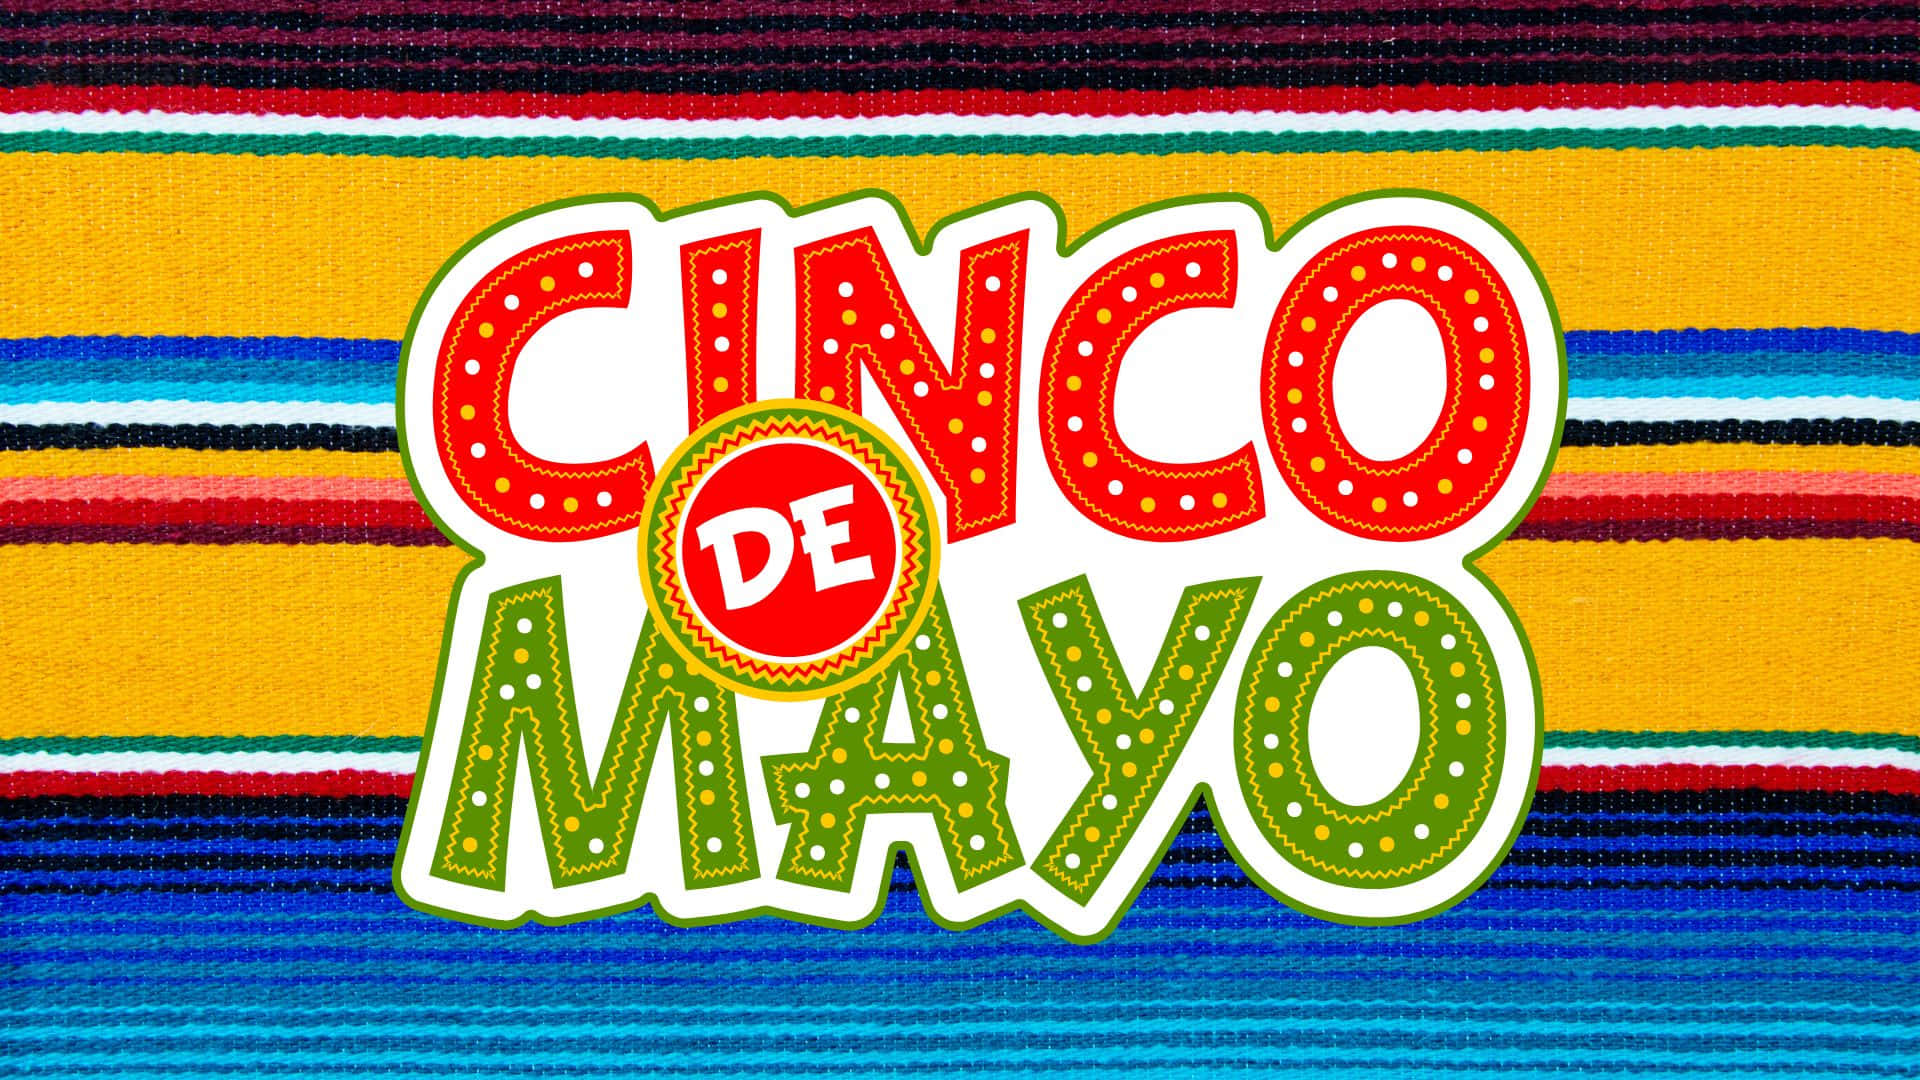 Feierecinco De Mayo Dieses Jahr Mit Einem Festlichen Hintergrundbild! Wallpaper